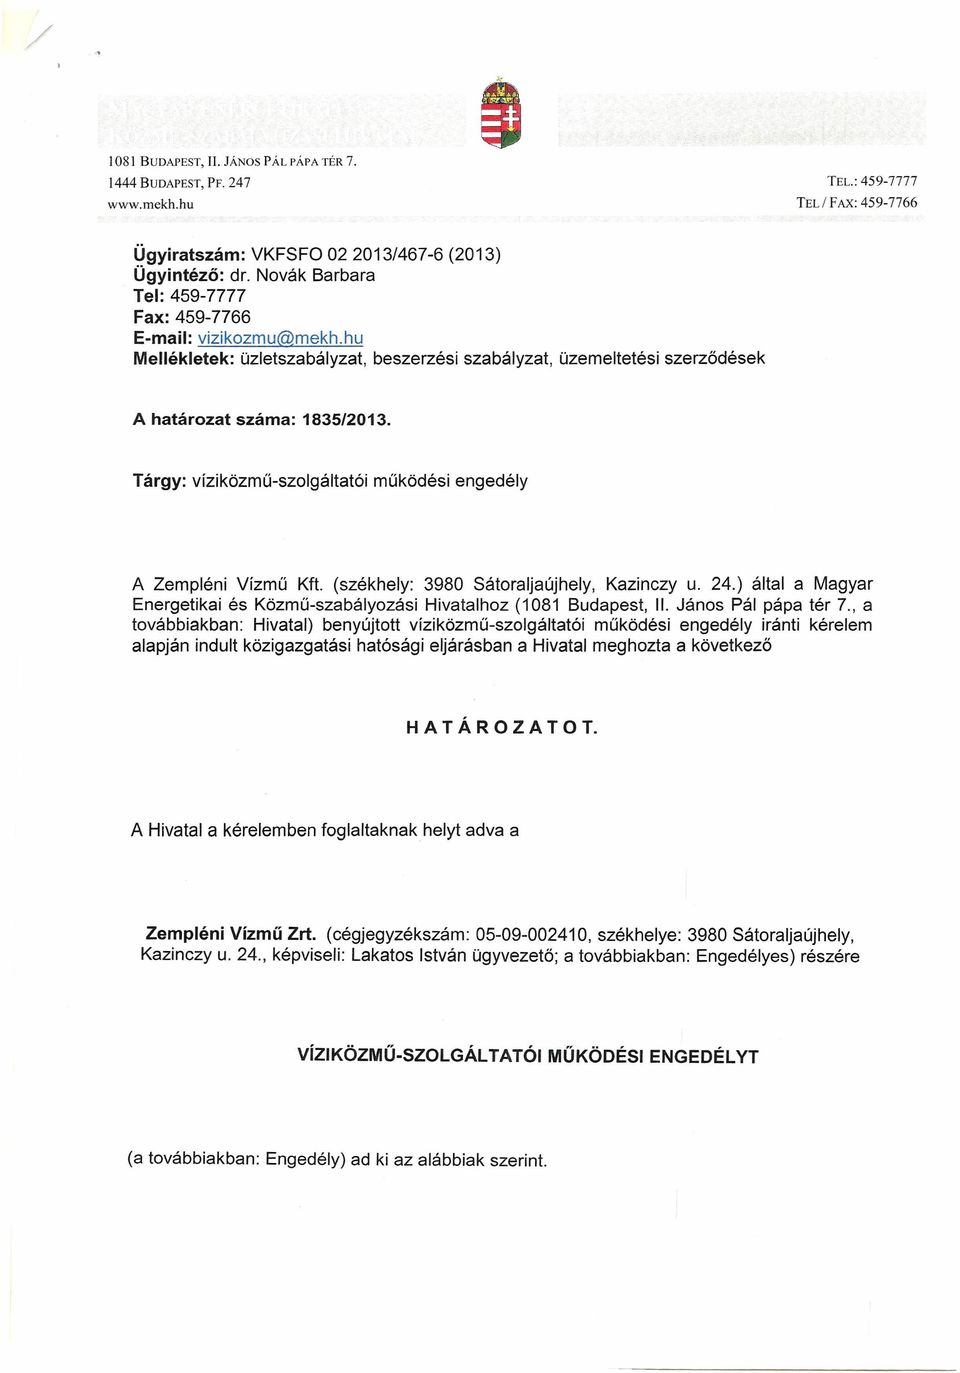 Tárgy: vízi közmű-szolgáltatói működési engedély A Zempléni Vízmű Kft. (székhely: 3980 Sátoraljaújhely, Kazinczy u. 24.) által a Magyar Energetikai és Közmű-szabályozási Hivatalhoz (1081 Budapest, II.